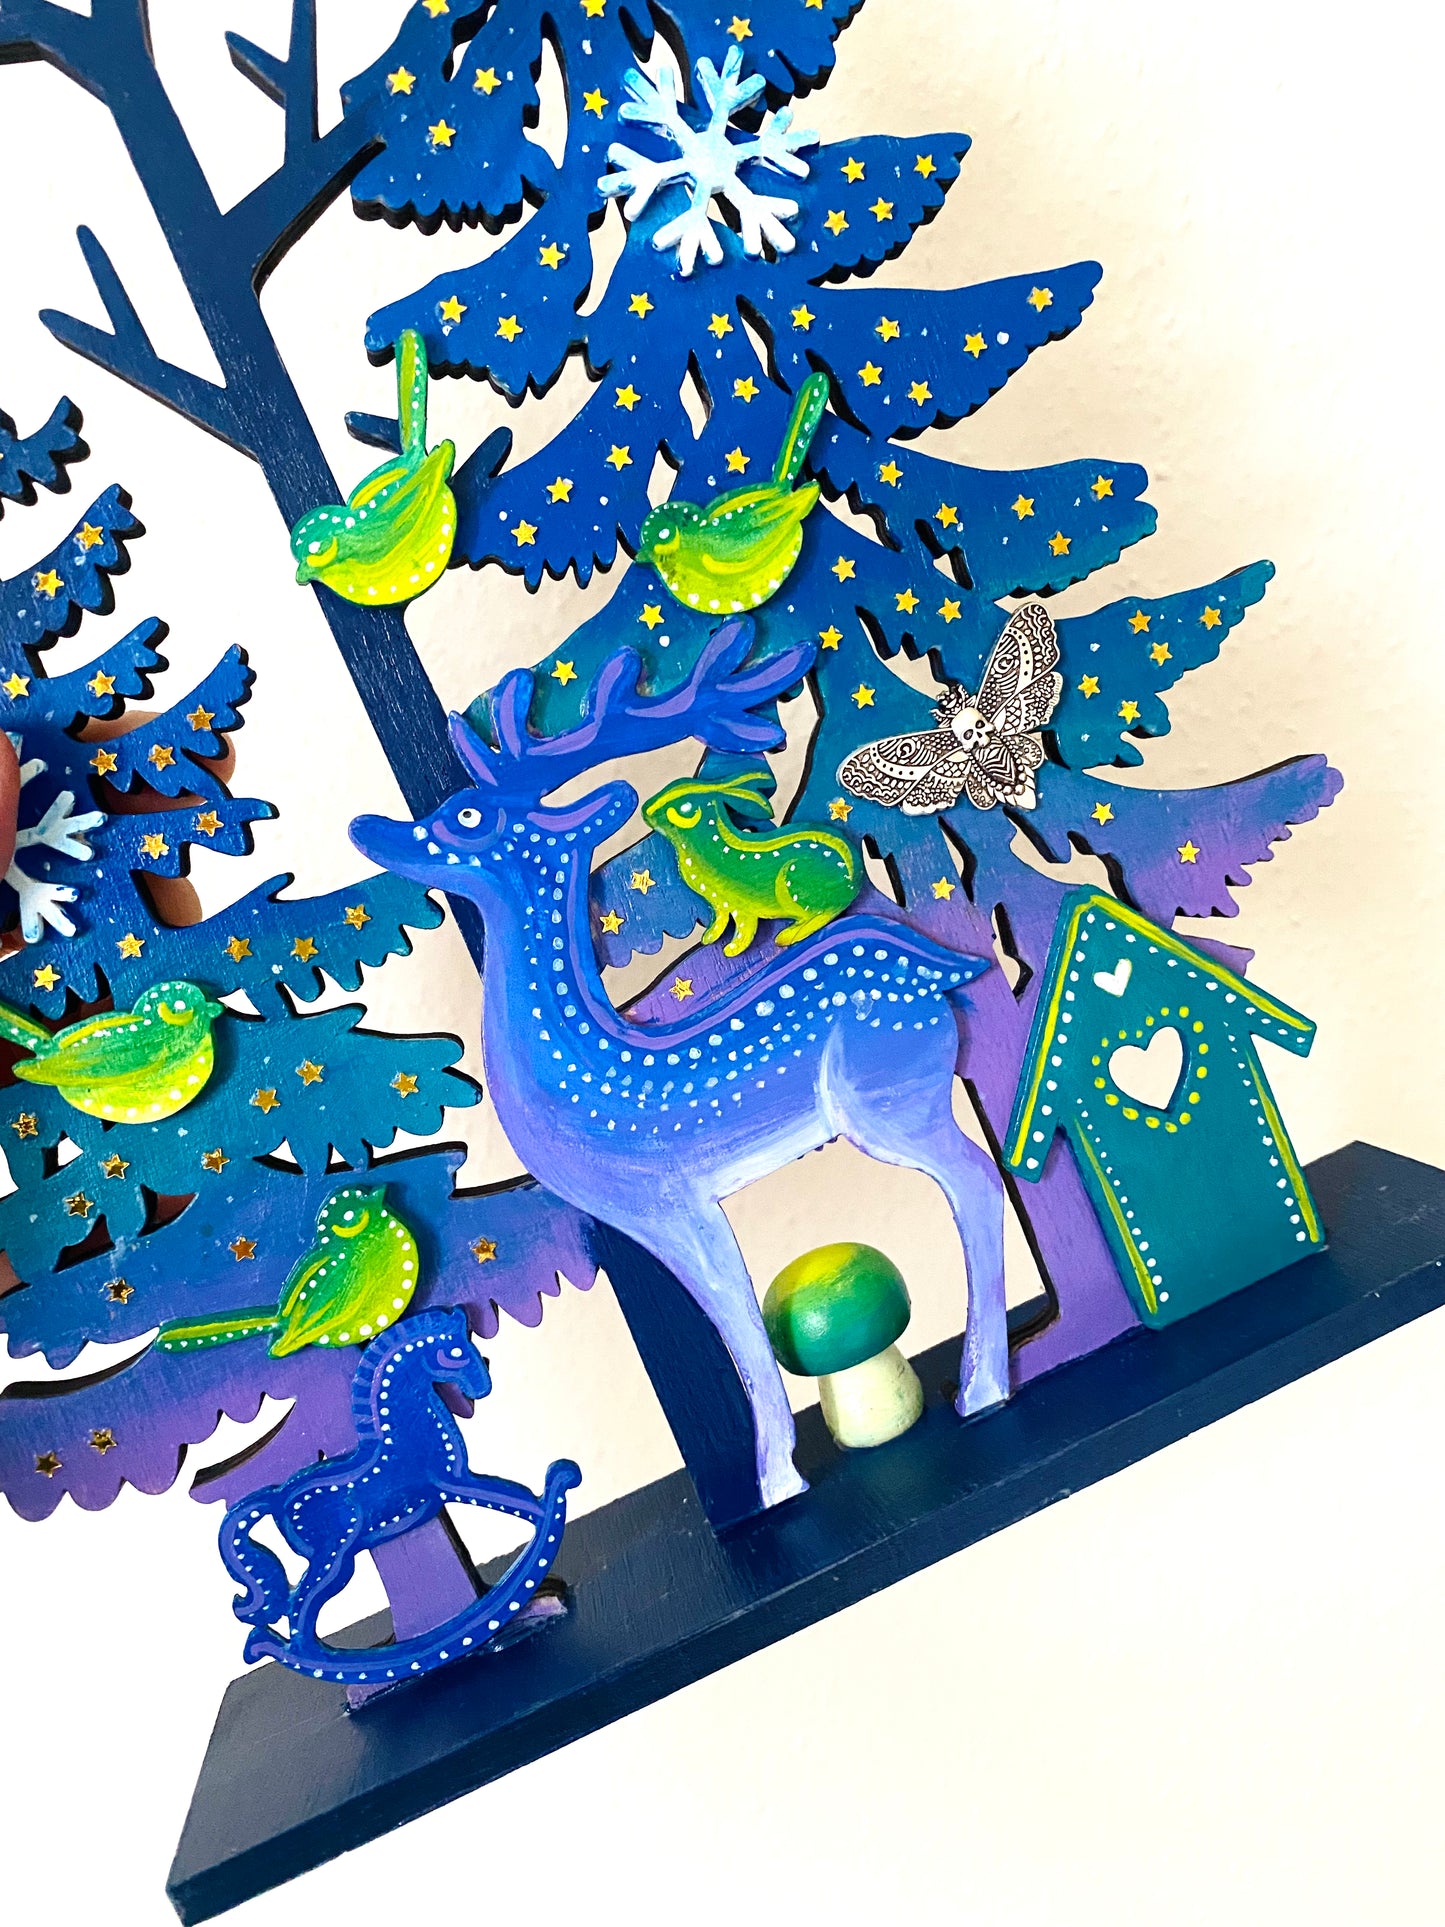 Christmas deer in a magic forest / Karácsonyi szarvas varázserdőben